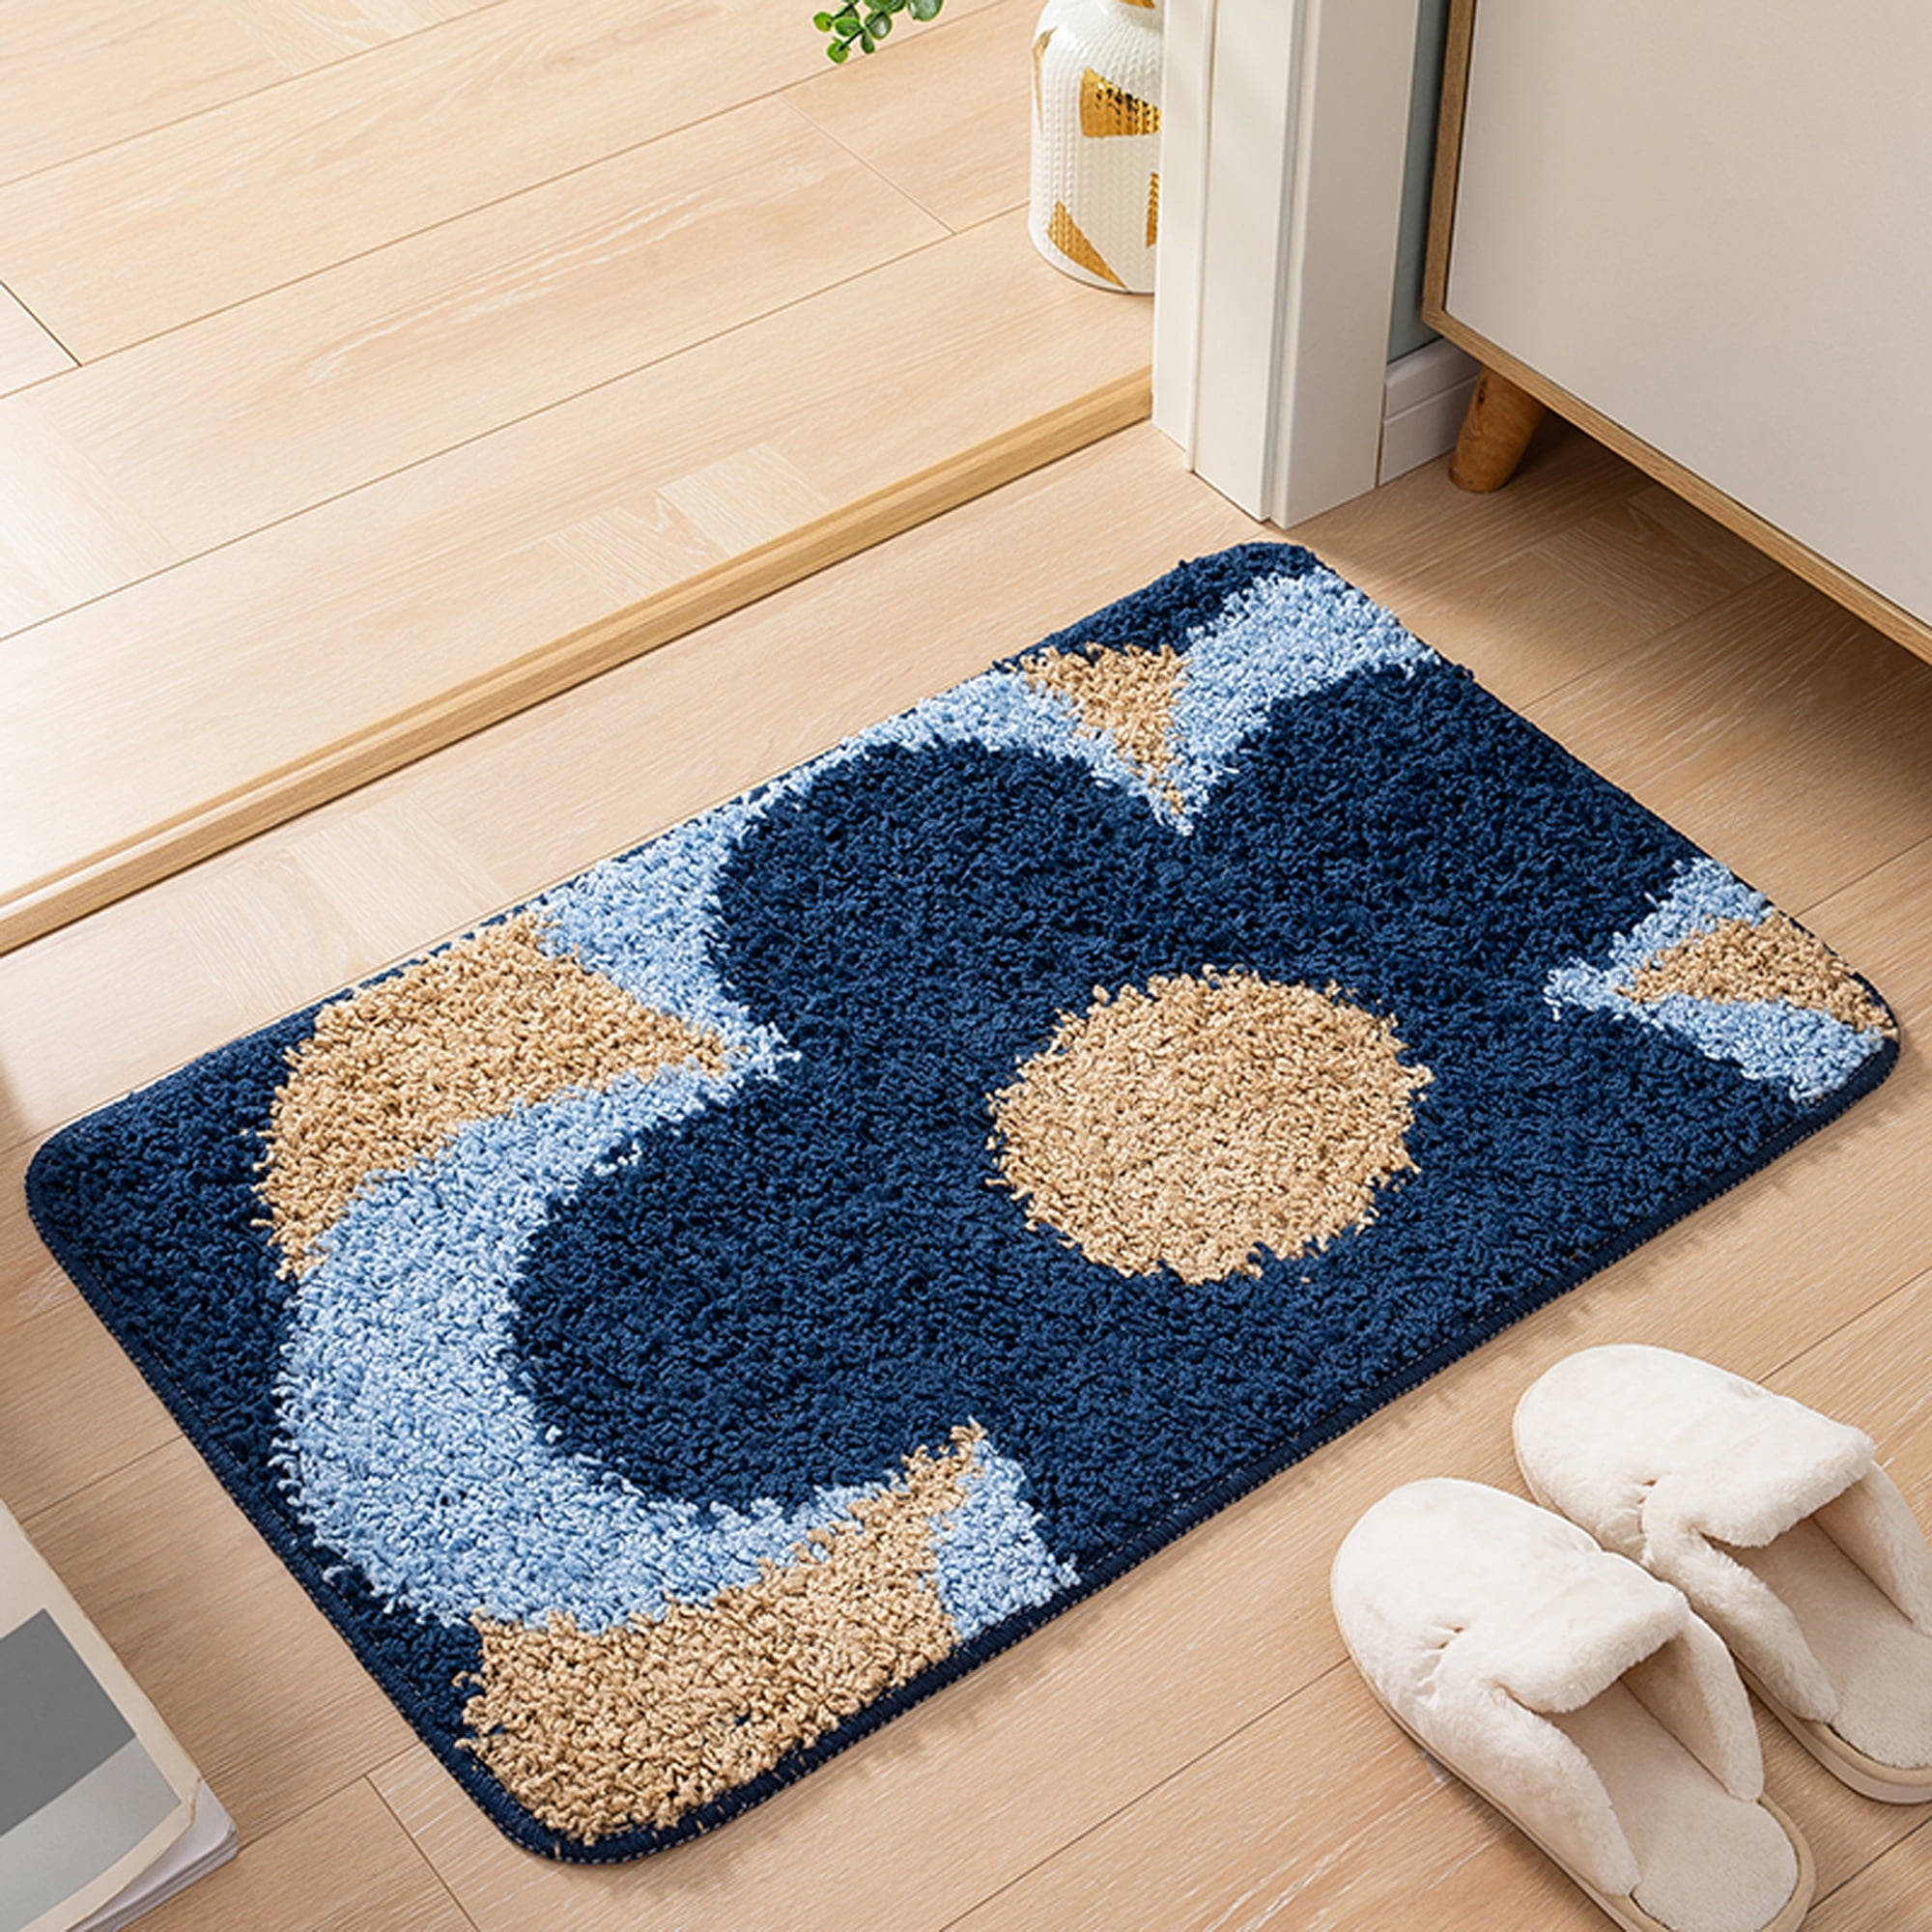 Black Rubber Door Mat  Honeycomb Style Doormat for Indoor Outdoor